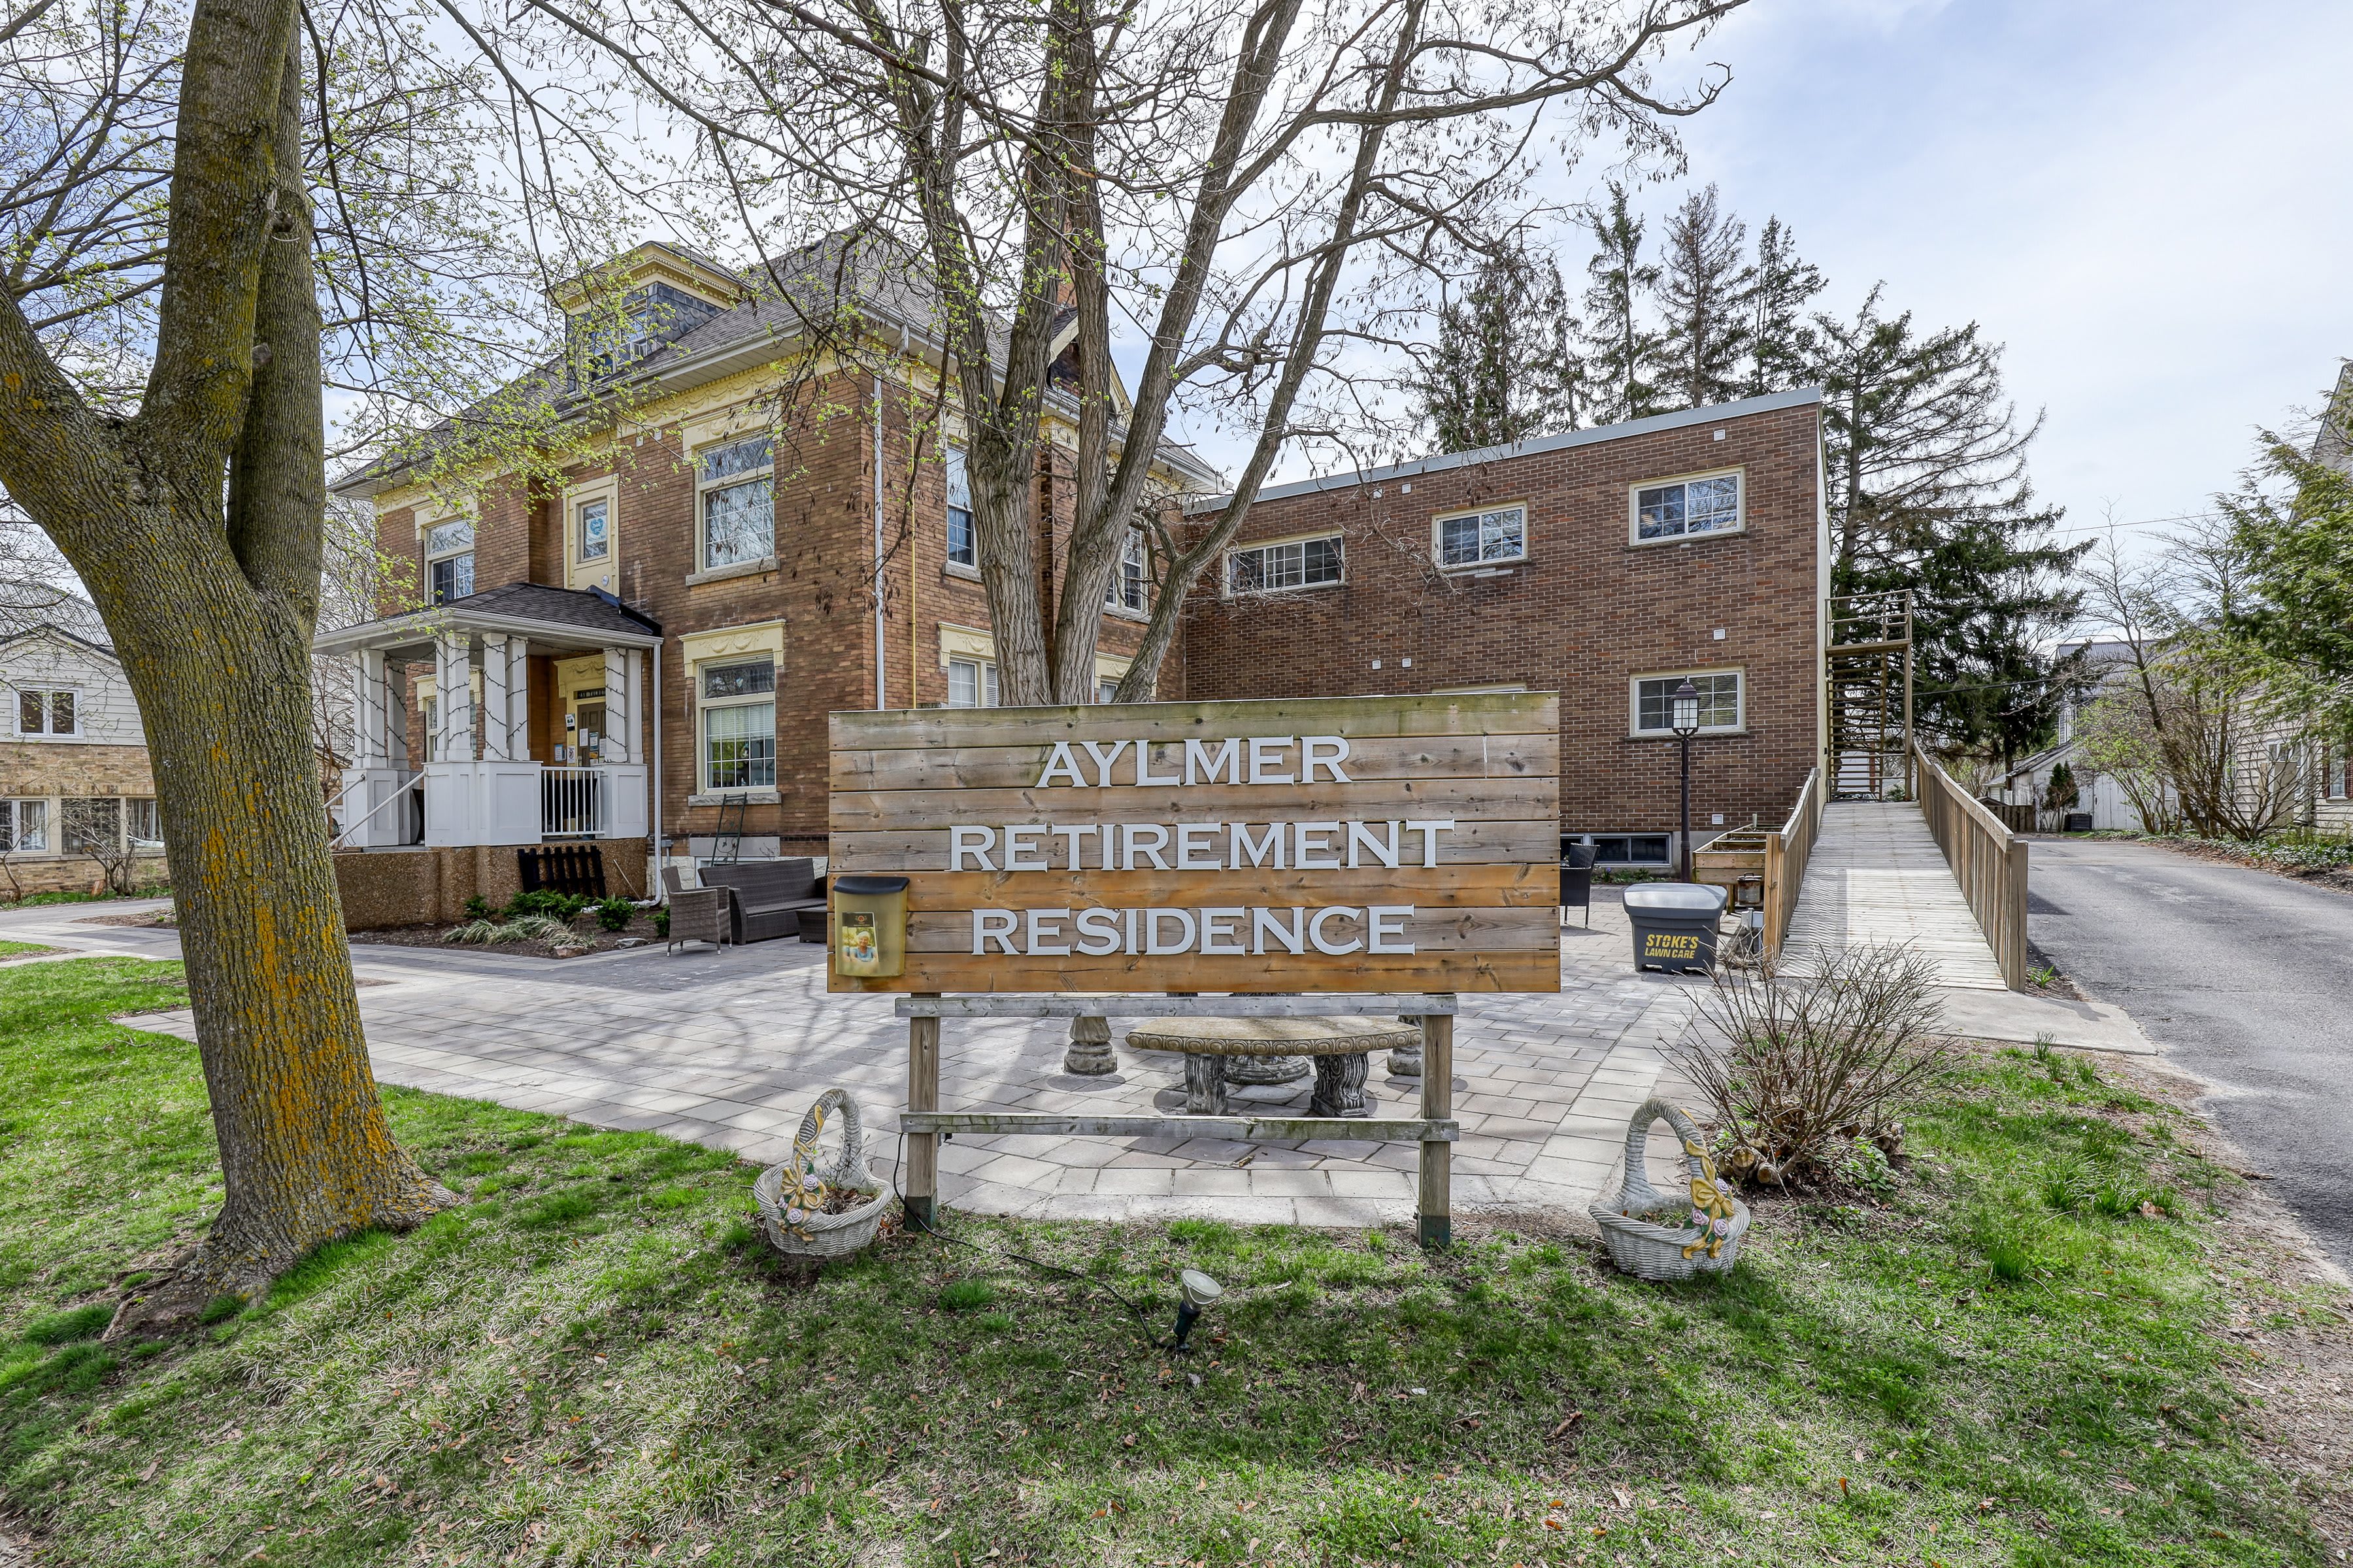 Aylmer Retirement Residence 